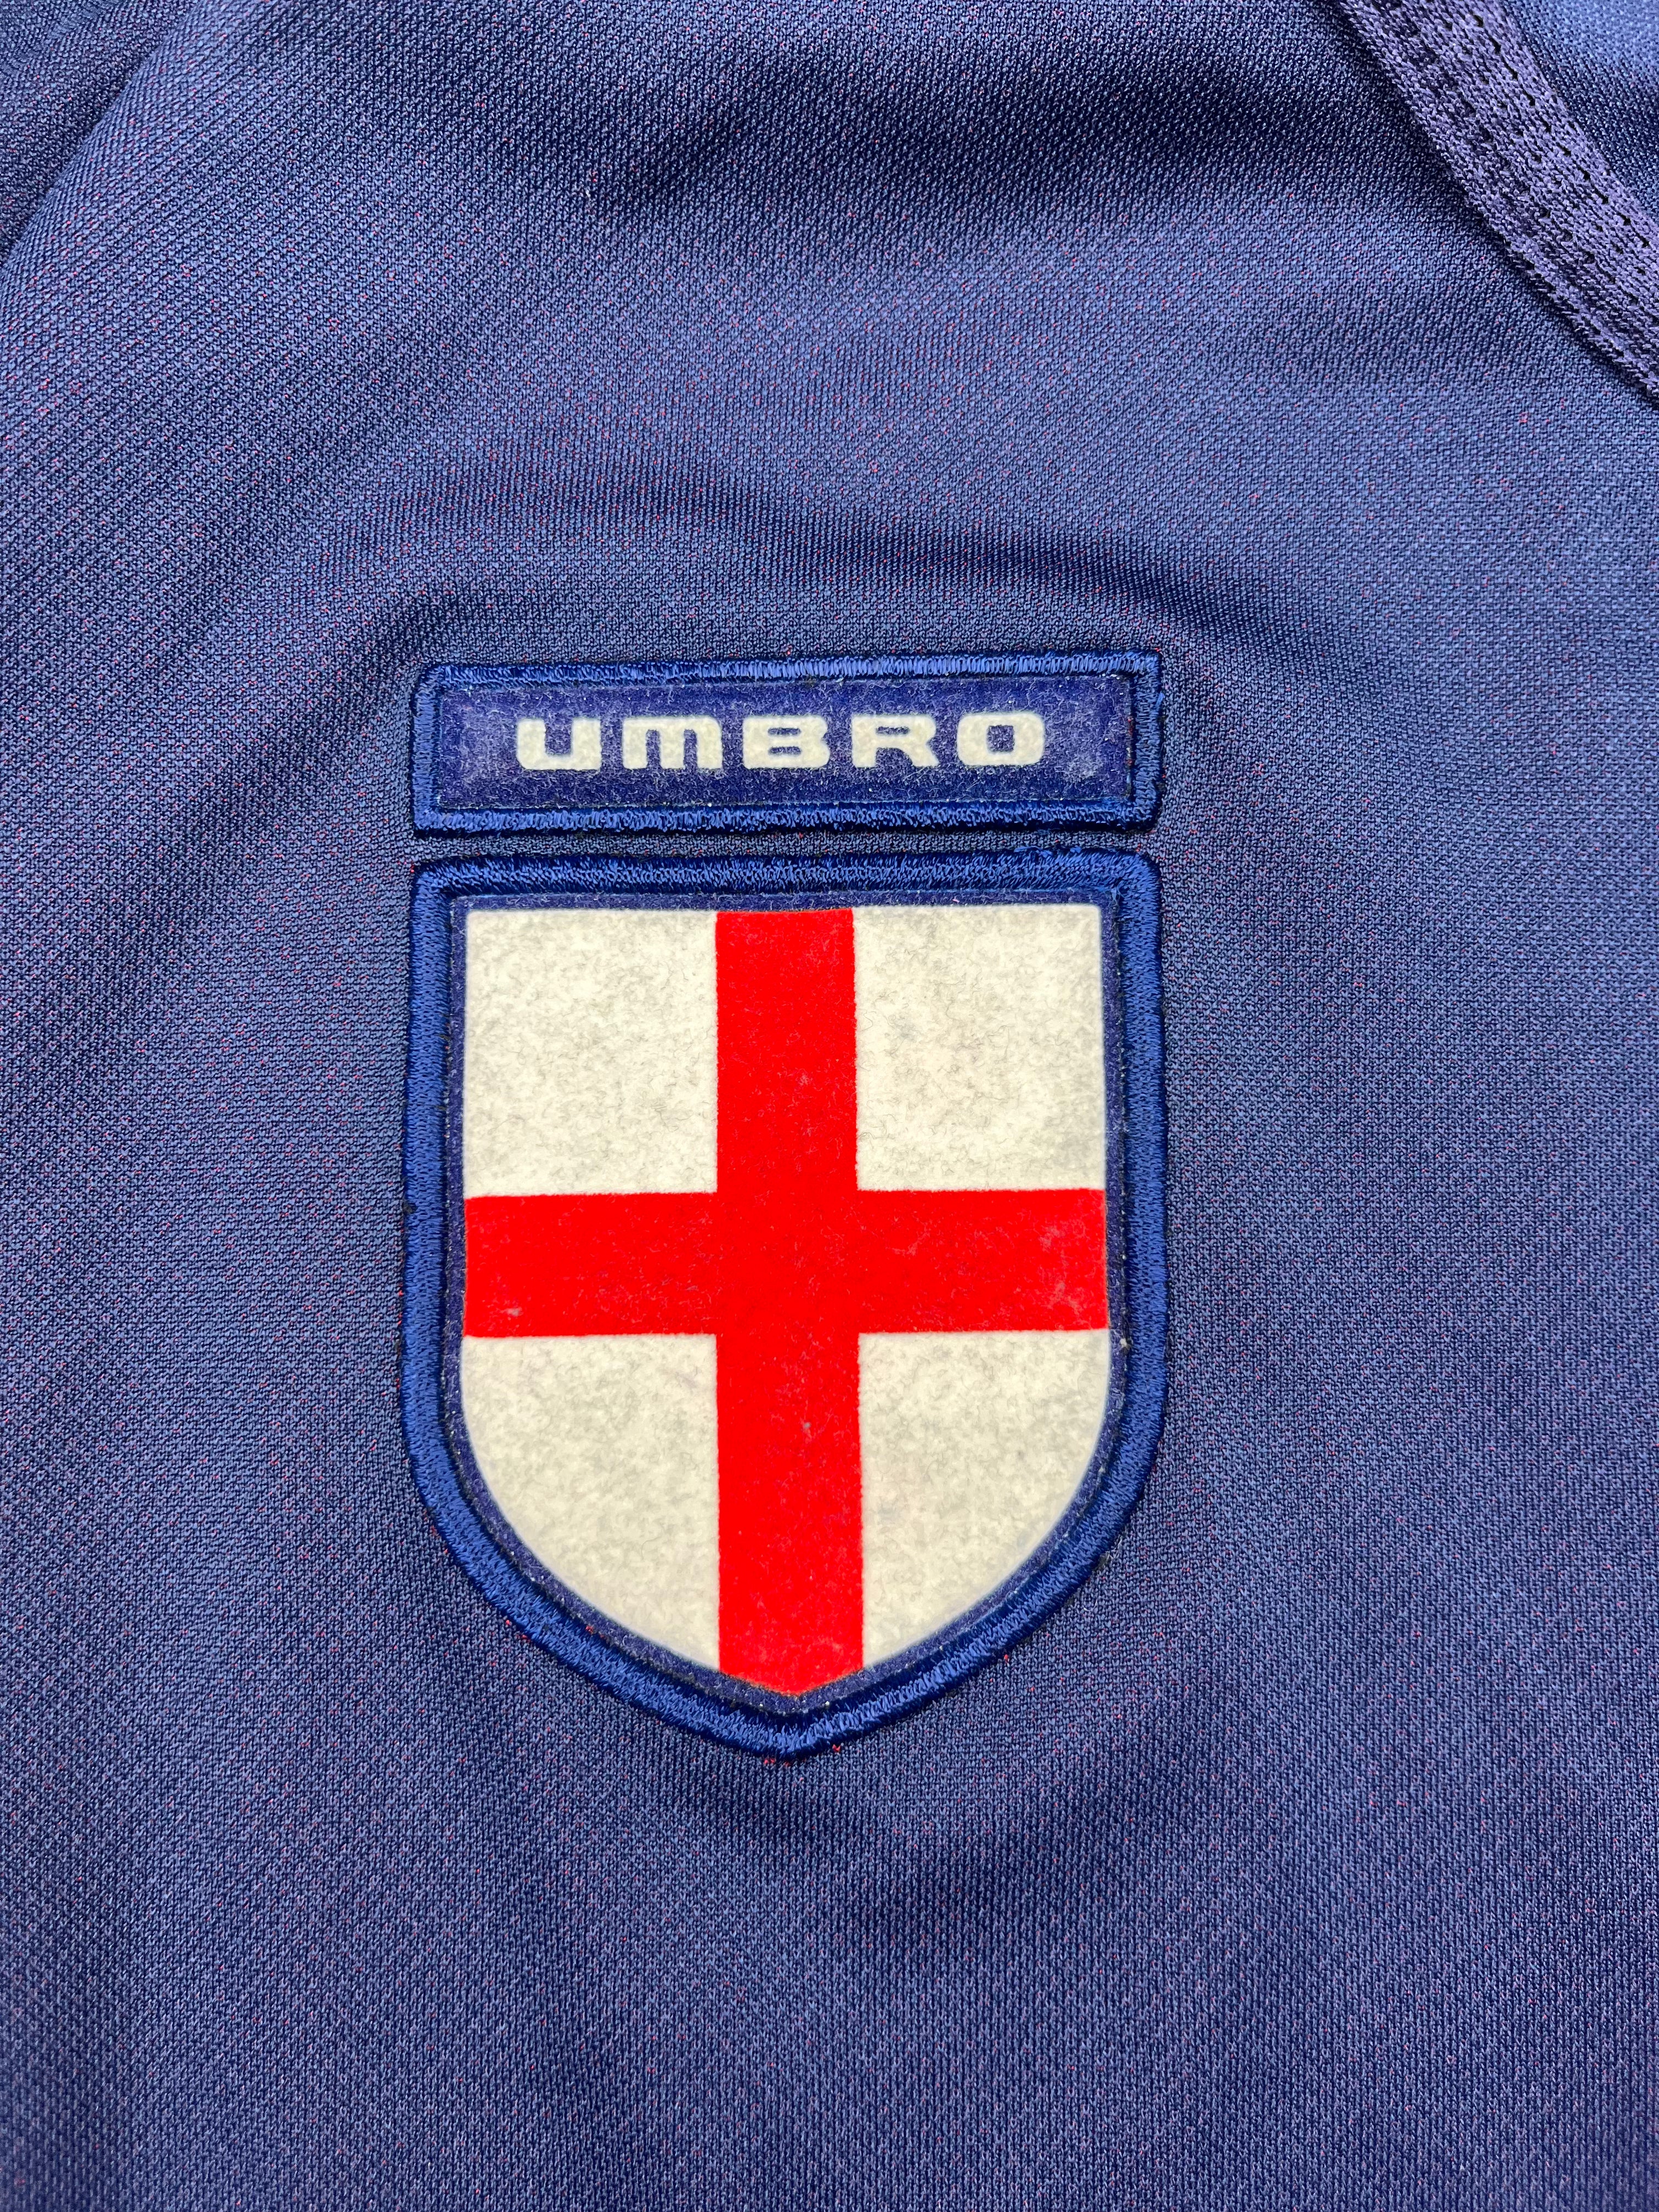 2002/04 England Away Shirt (M) 9/10